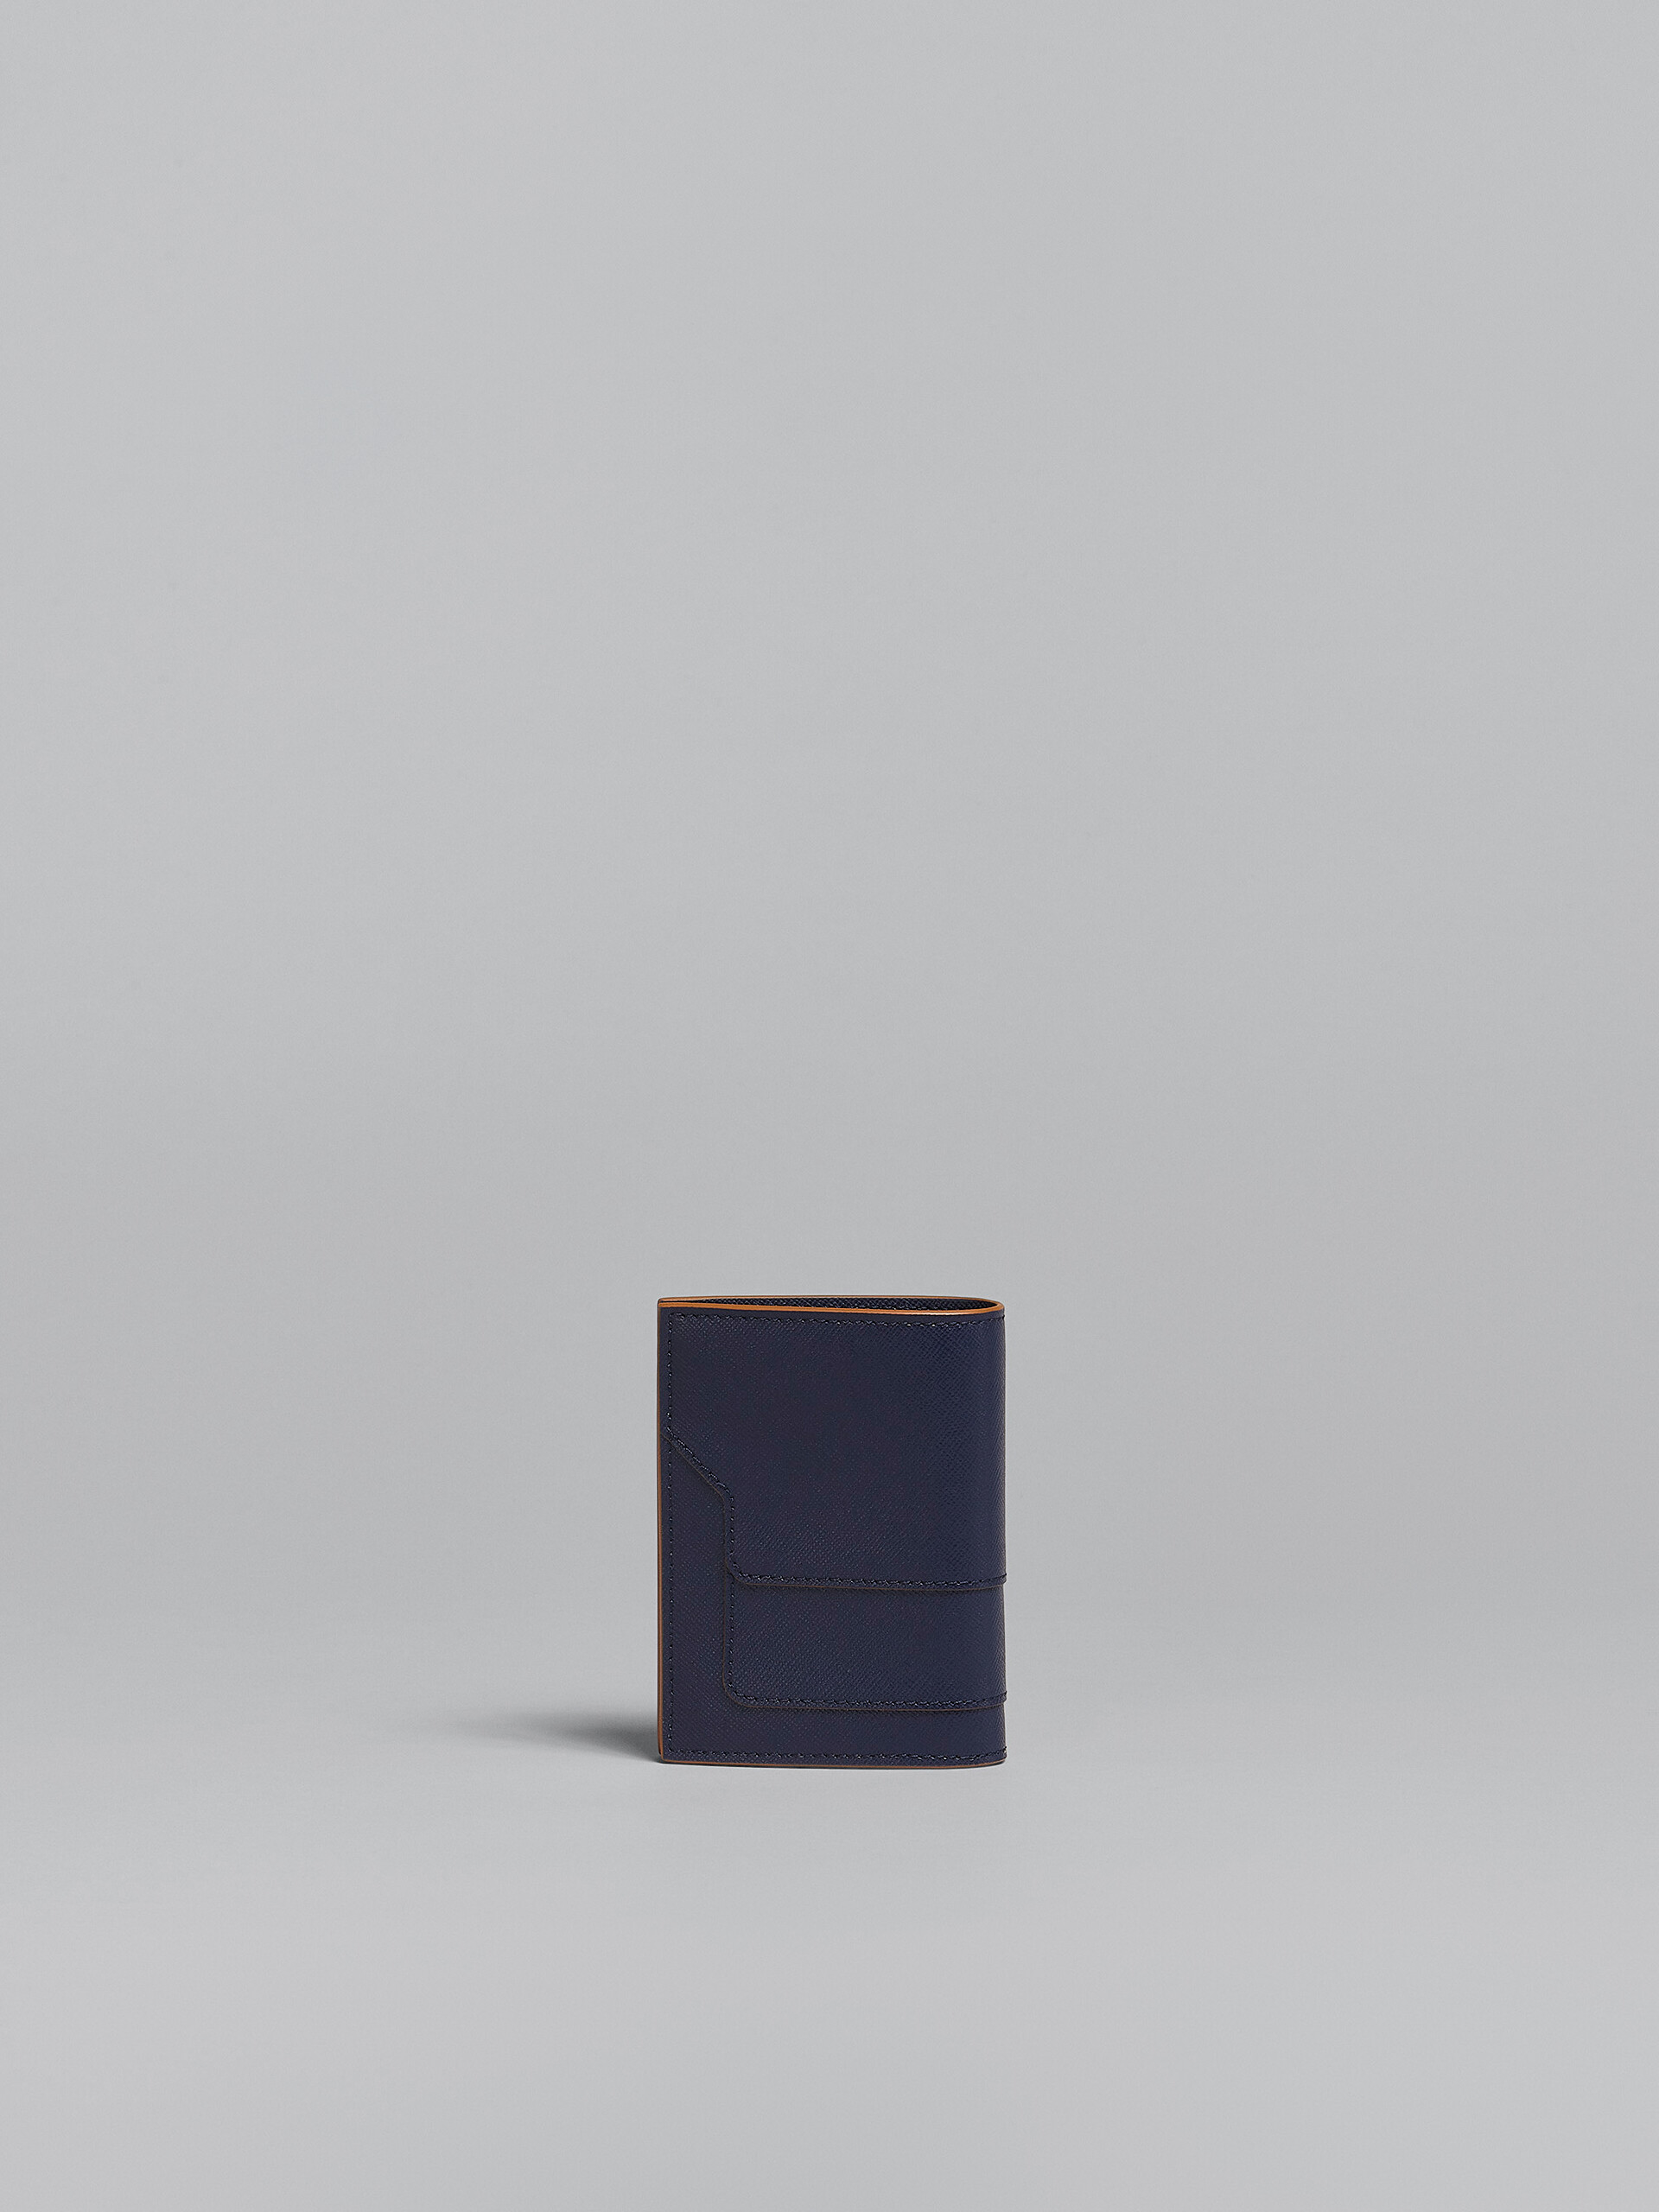 ブルー サフィアーノレザー二つ折りウォレット - 財布 - Image 3